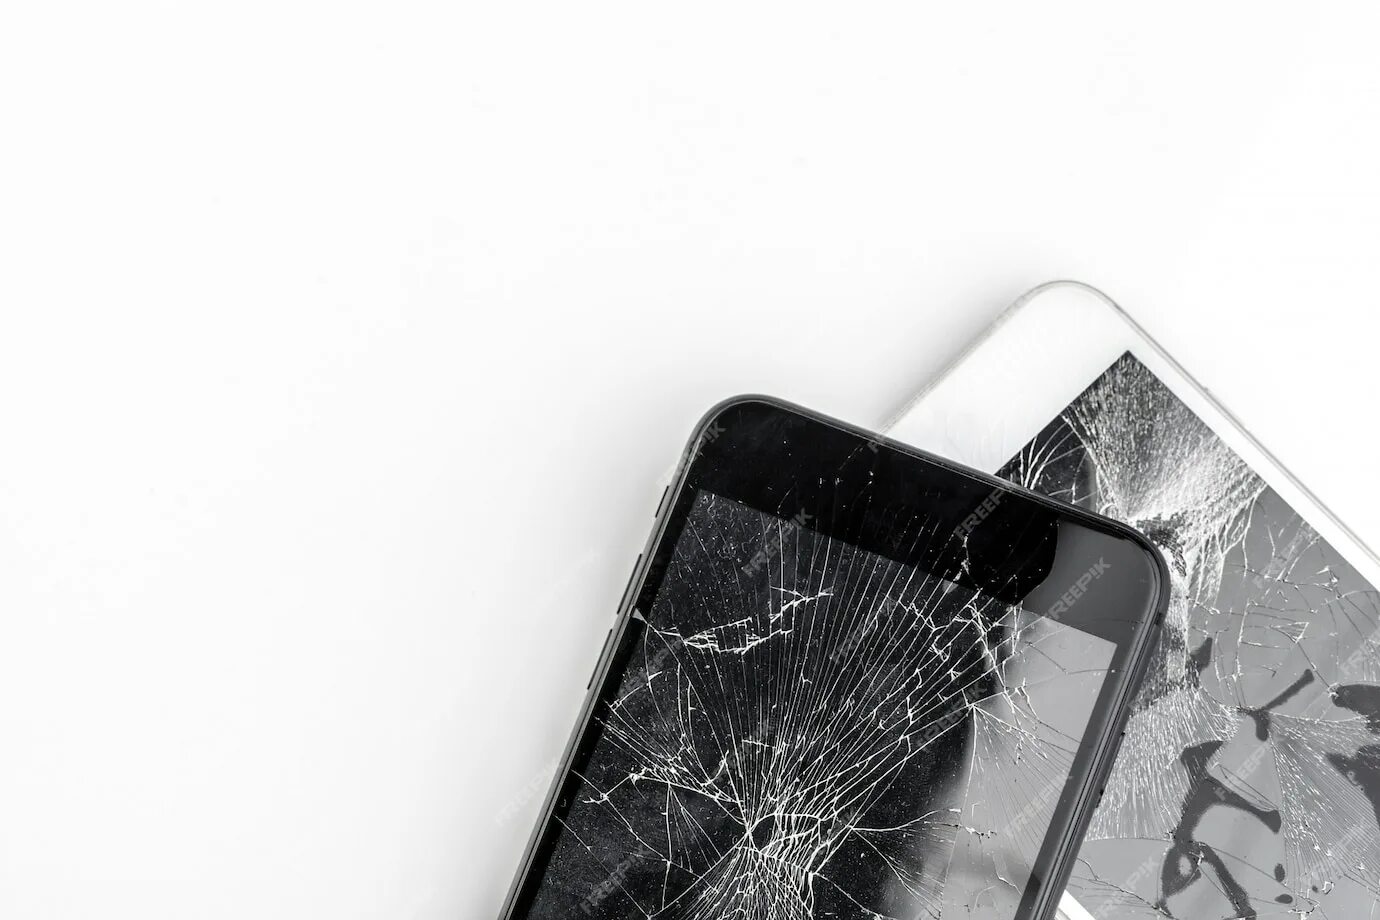 Купить телефон не разбиваемый. Смартфон с разбитым экраном. Смартфон с разбитым стеклом. Сломанный смартфон. Битый дисплей смартфона.